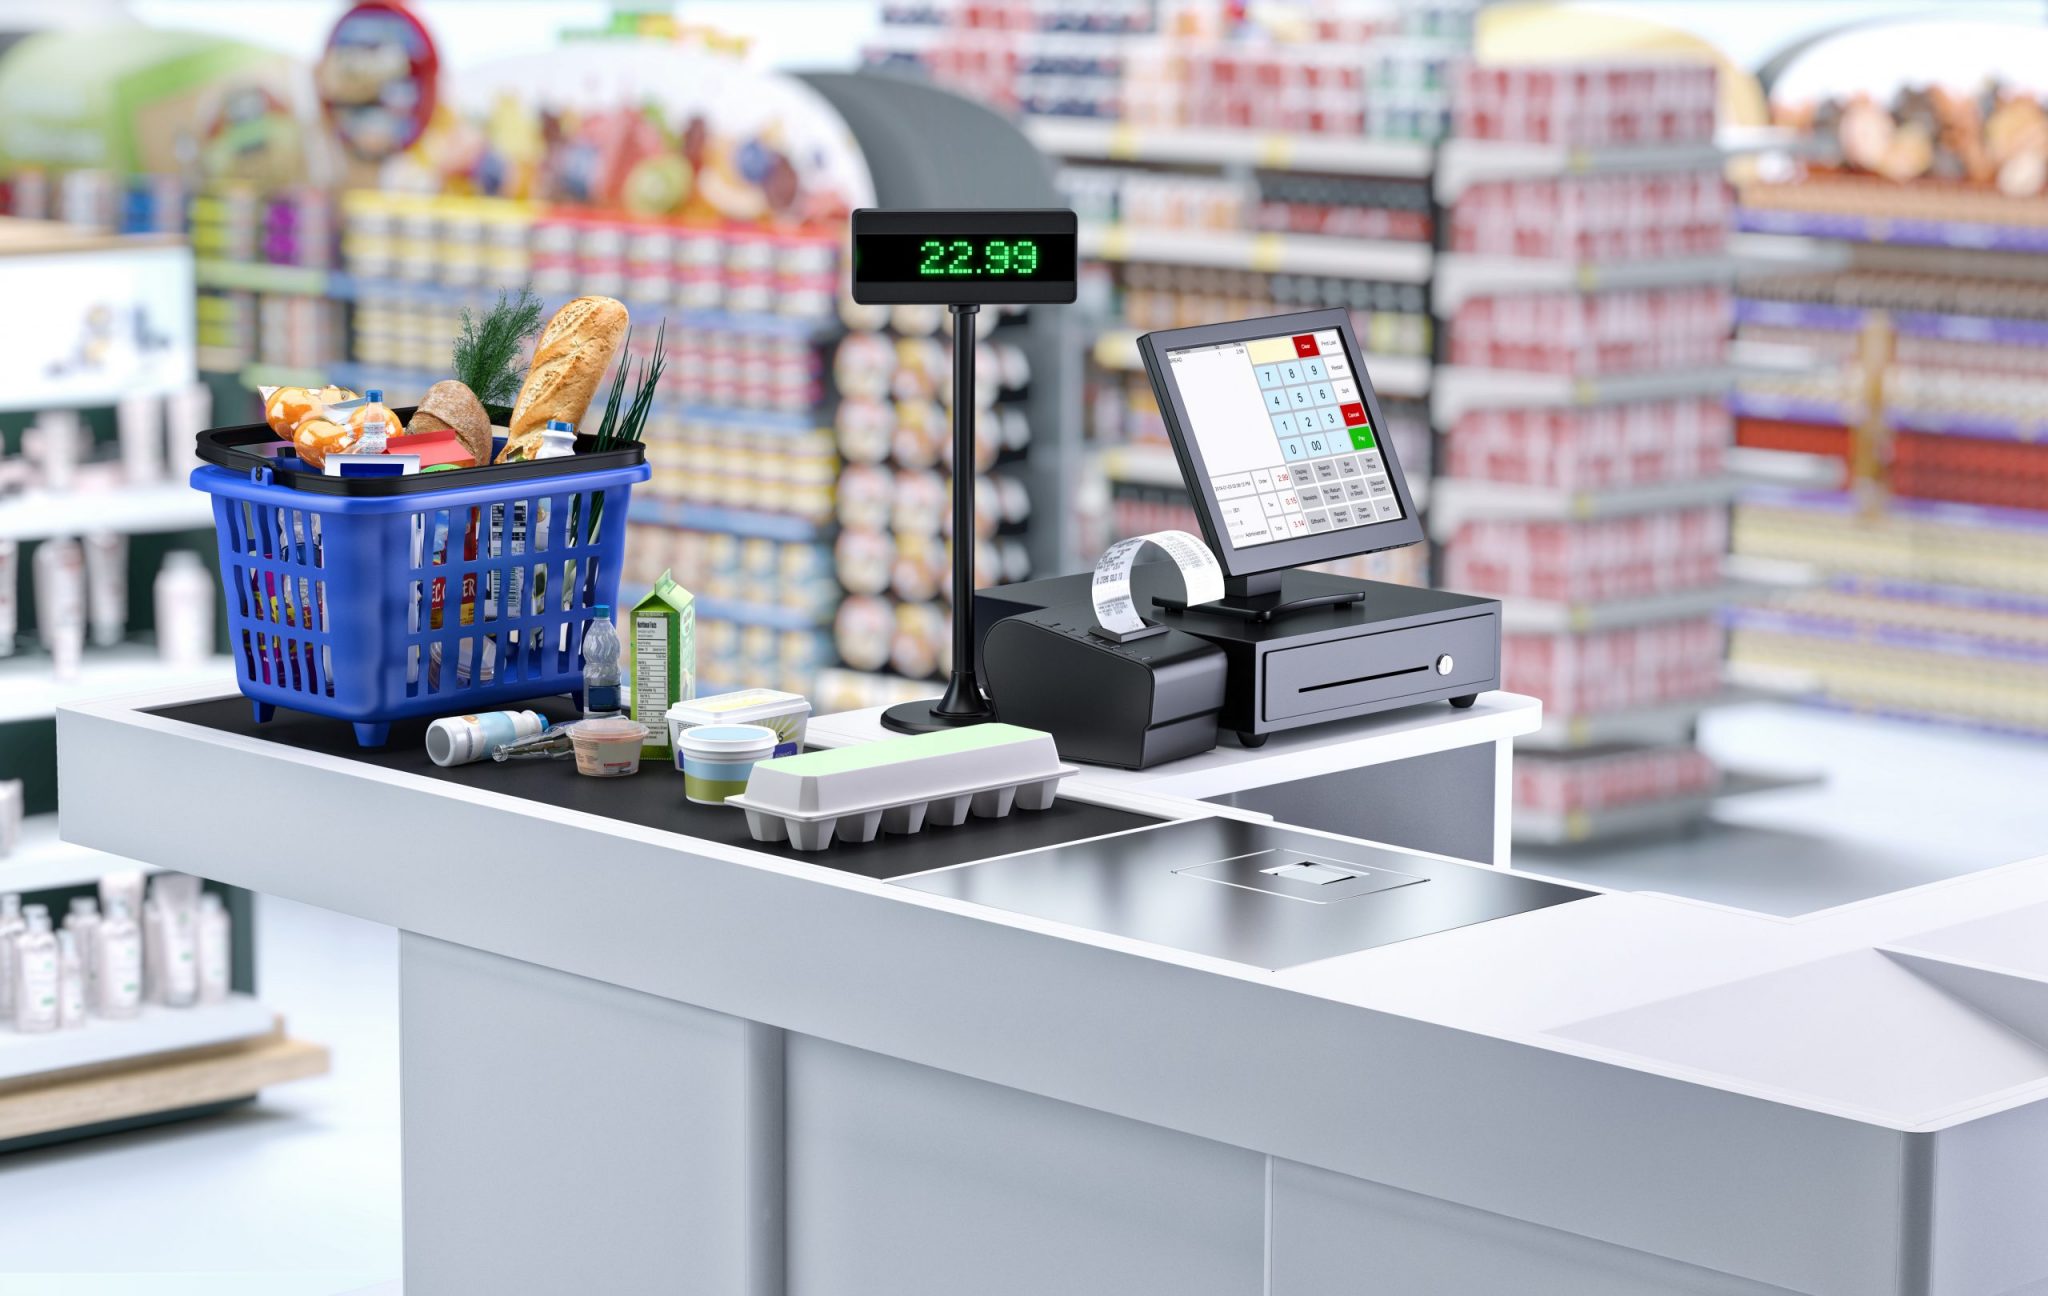 Σούπερ μάρκετ: Γιατί αναμένεται μείωση των τιμών μετά την εφαρμογή των μέτρων